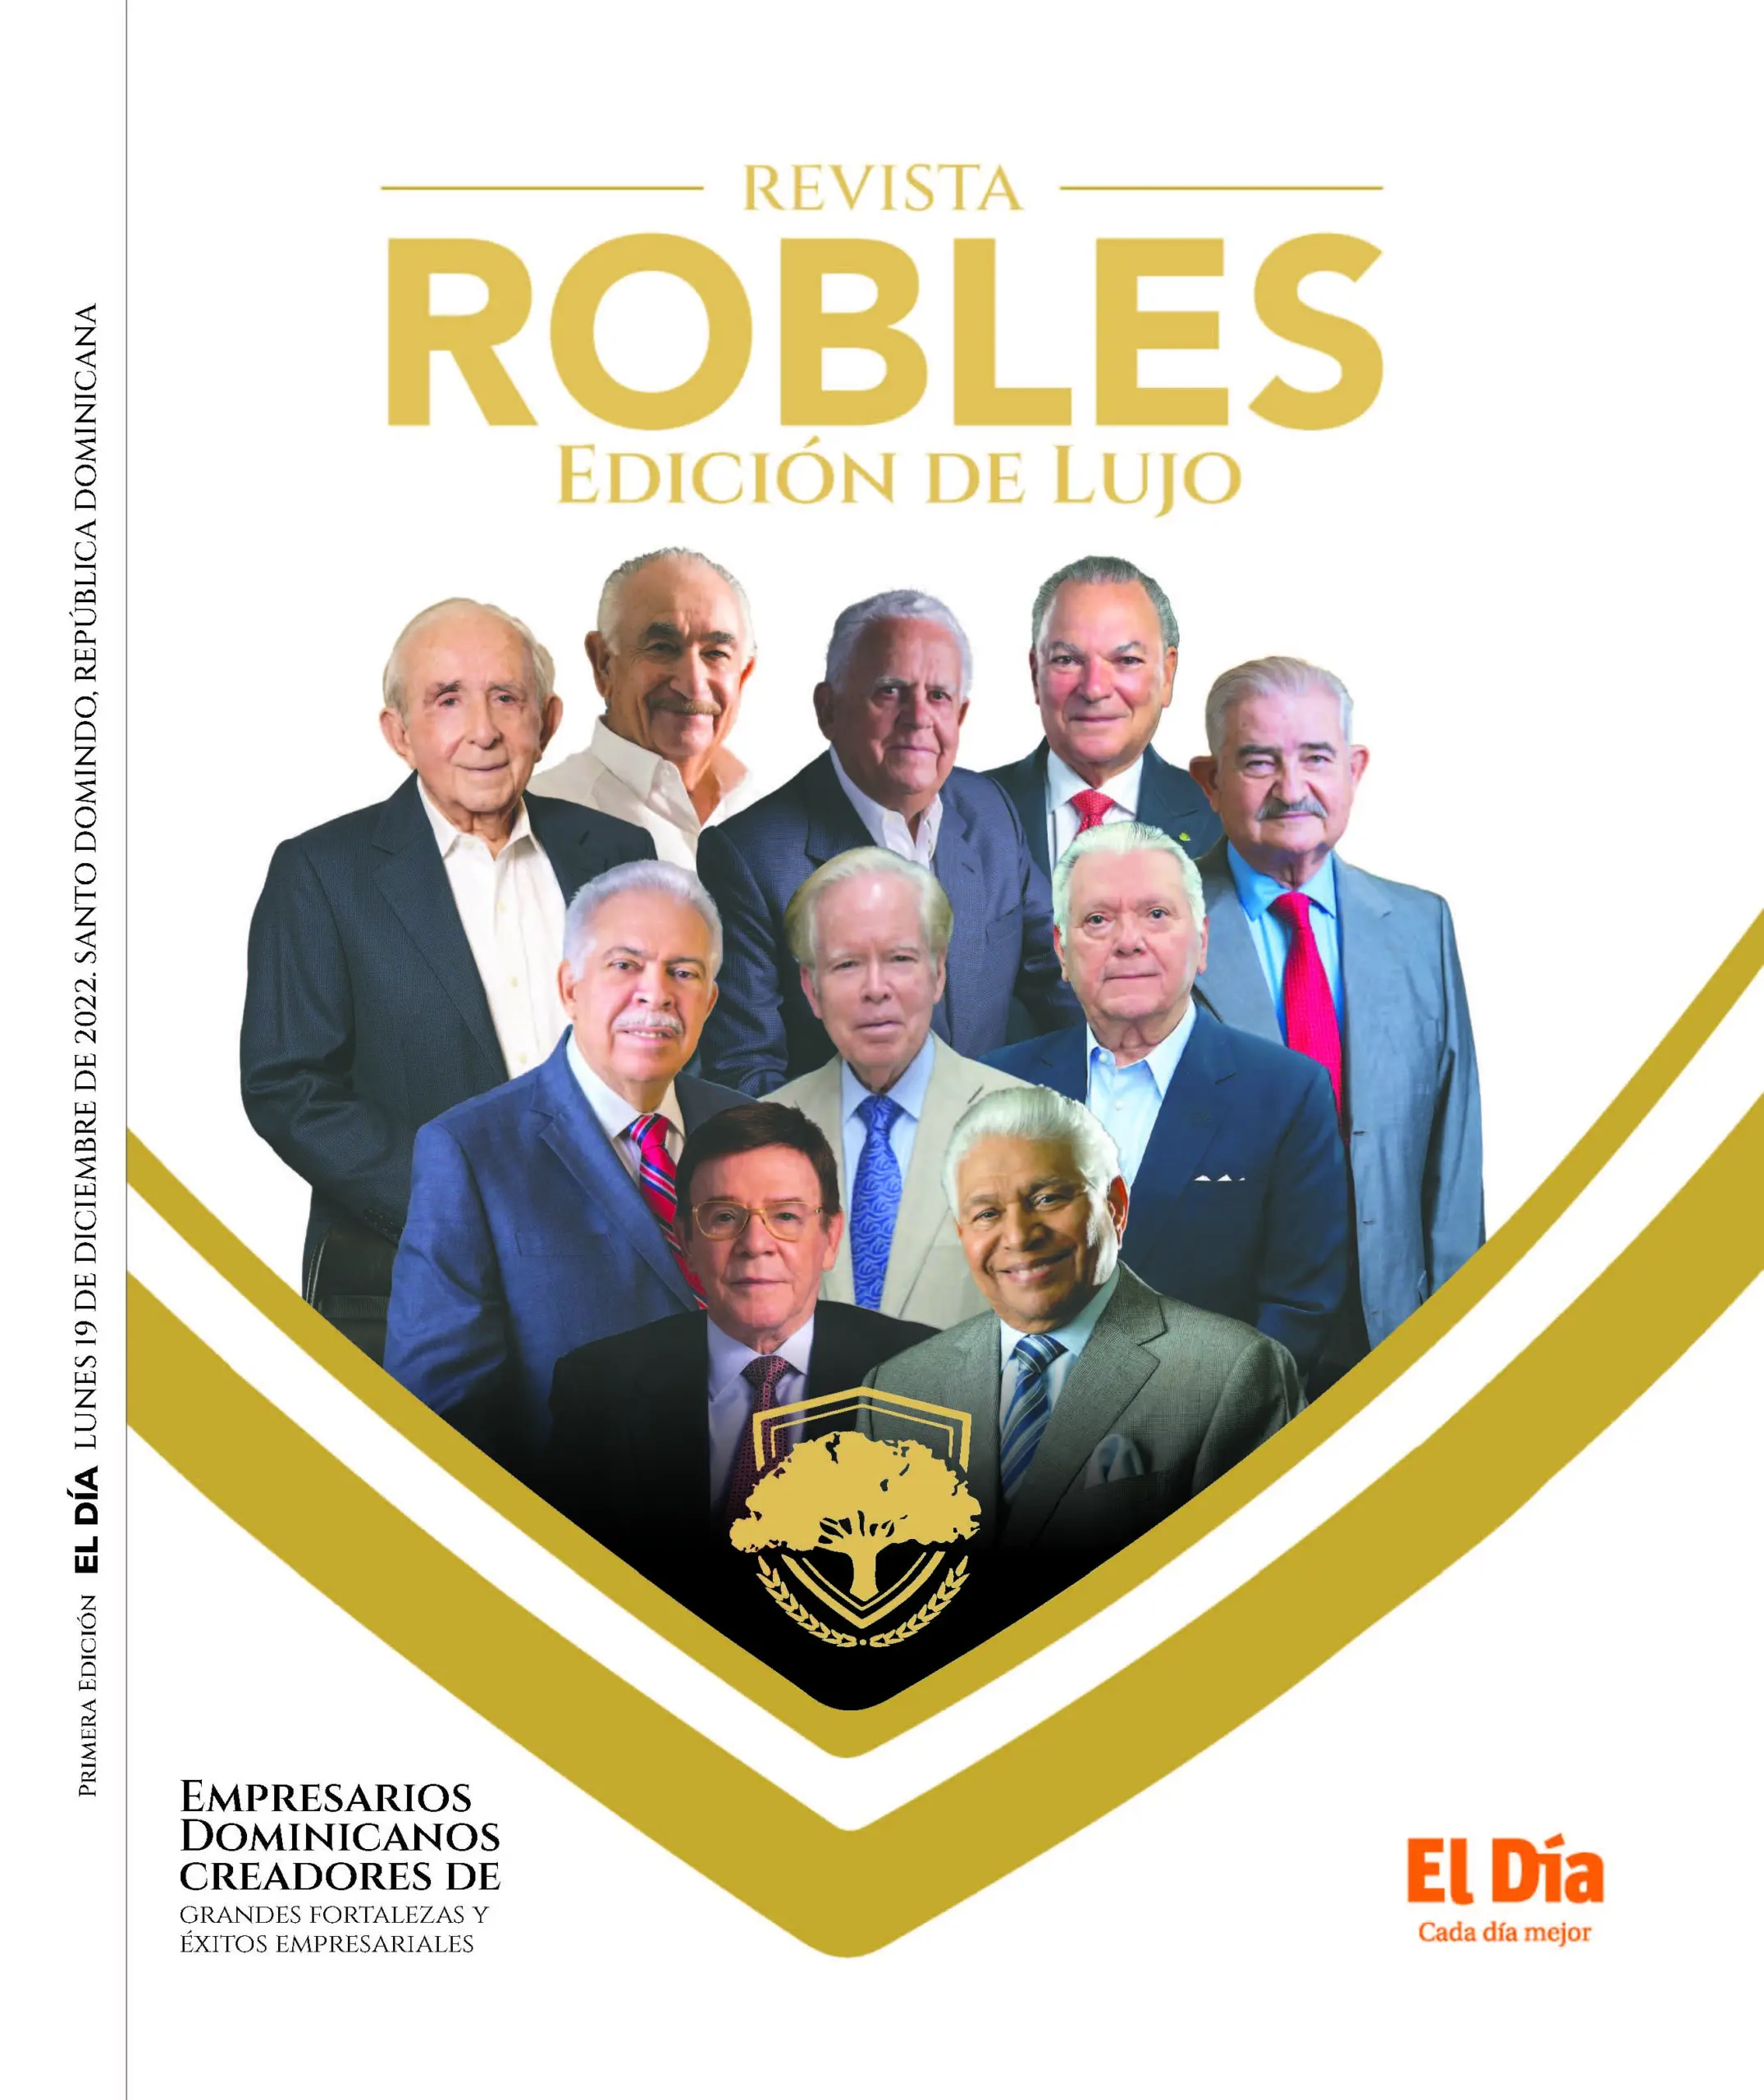 Robles: Conoce la historia de 10 destacados empresarios dominicanos